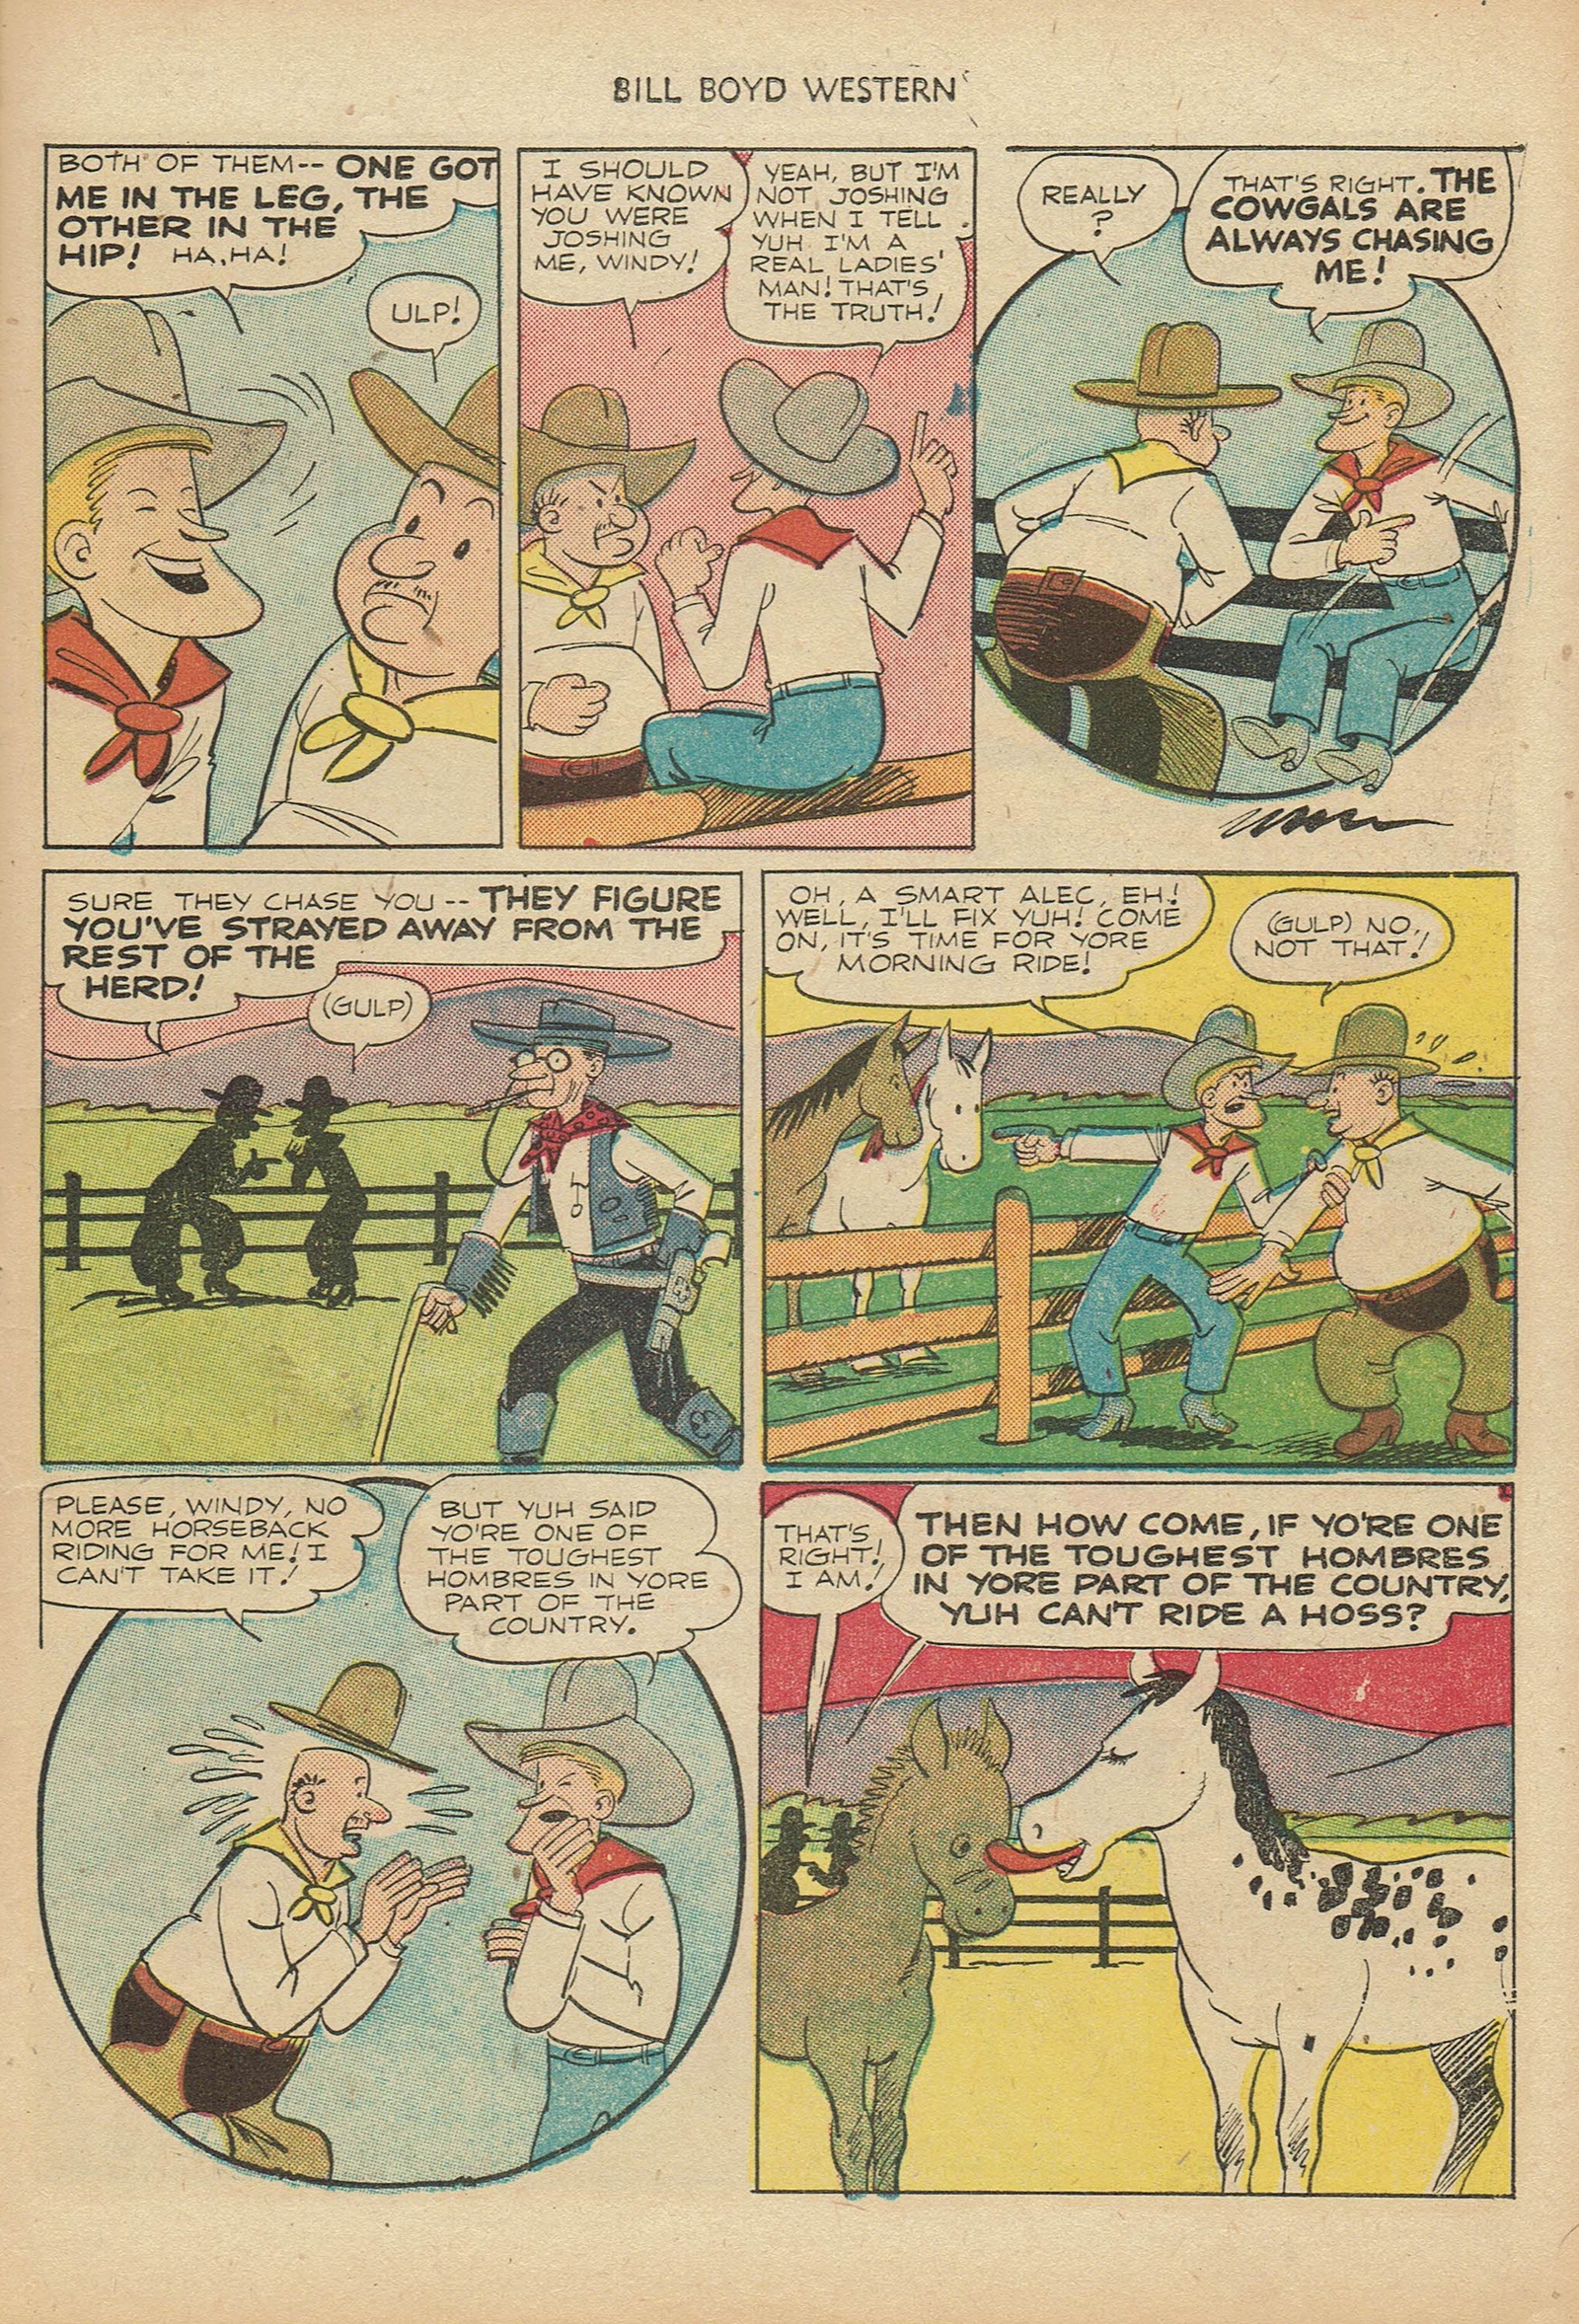 Read online Bill Boyd Western comic -  Issue #18 - 15